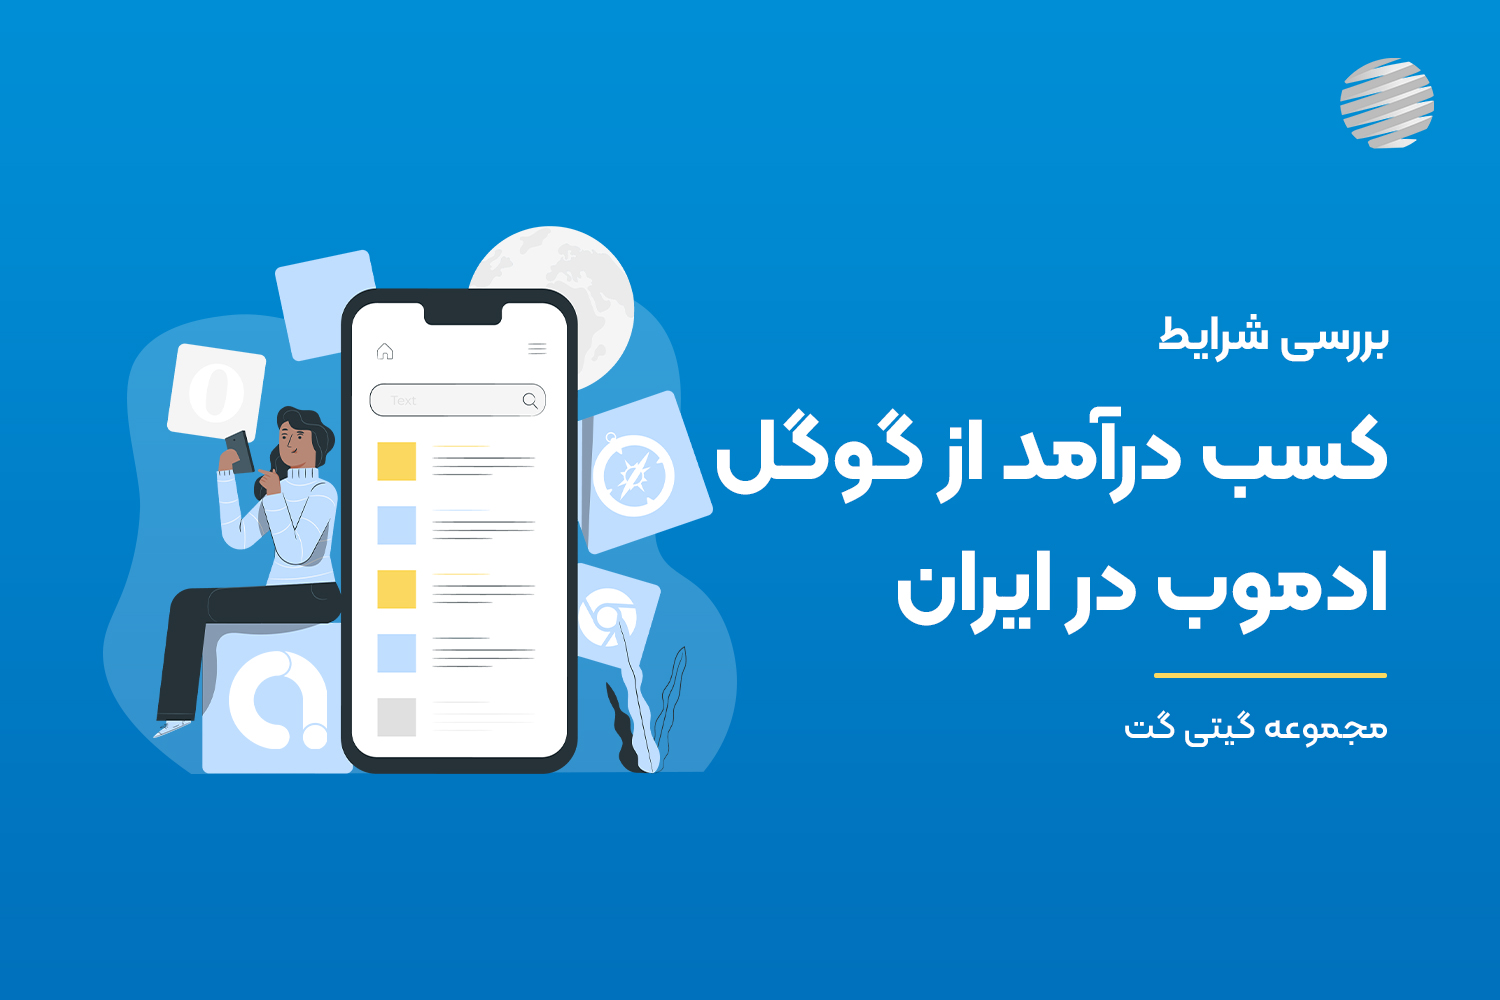 یکی از رایج‌ترین راه‌ها برای نمایش تبلیغات در برنامه‌های تلفن همراه و کسب درآمد از این طریق استفاده از سرویس گوگل ادموب است. در ادامه درباره شرایط کسب درامد از گوگل ادموب در ایران بیشتر توضیح خواهیم داد.